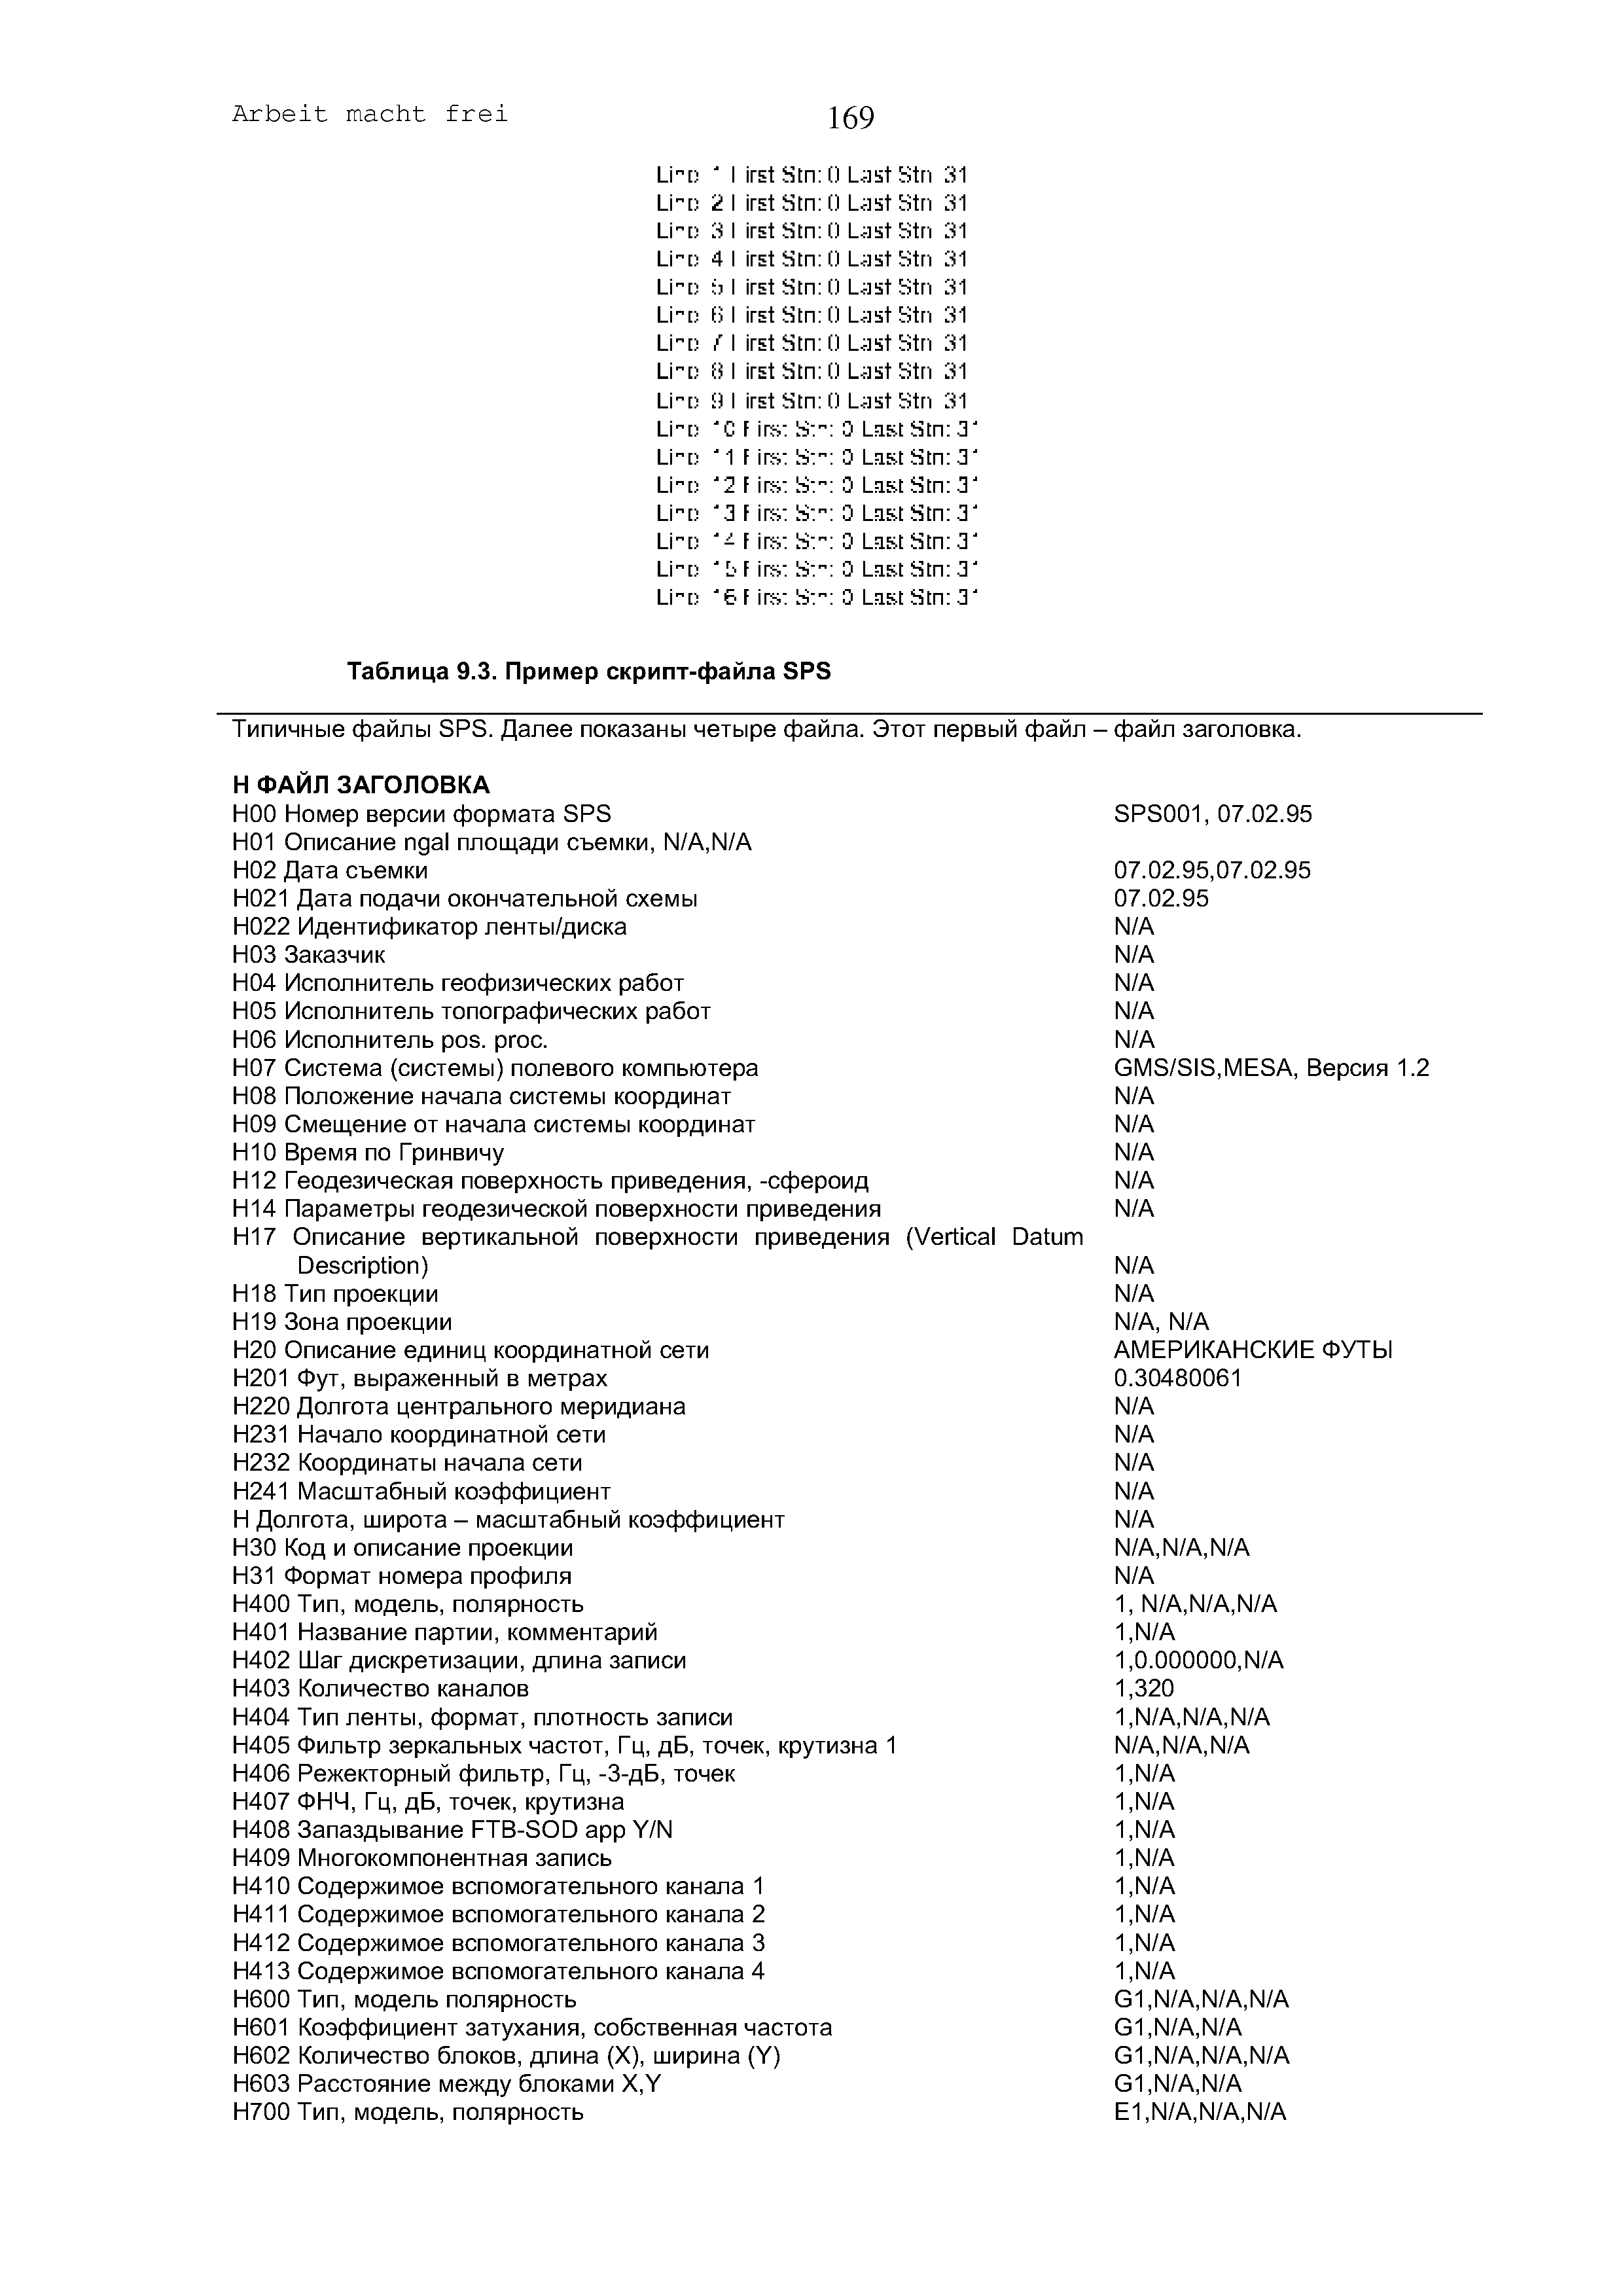 Таблица 9.3. Пример скрипт-файла SPS
